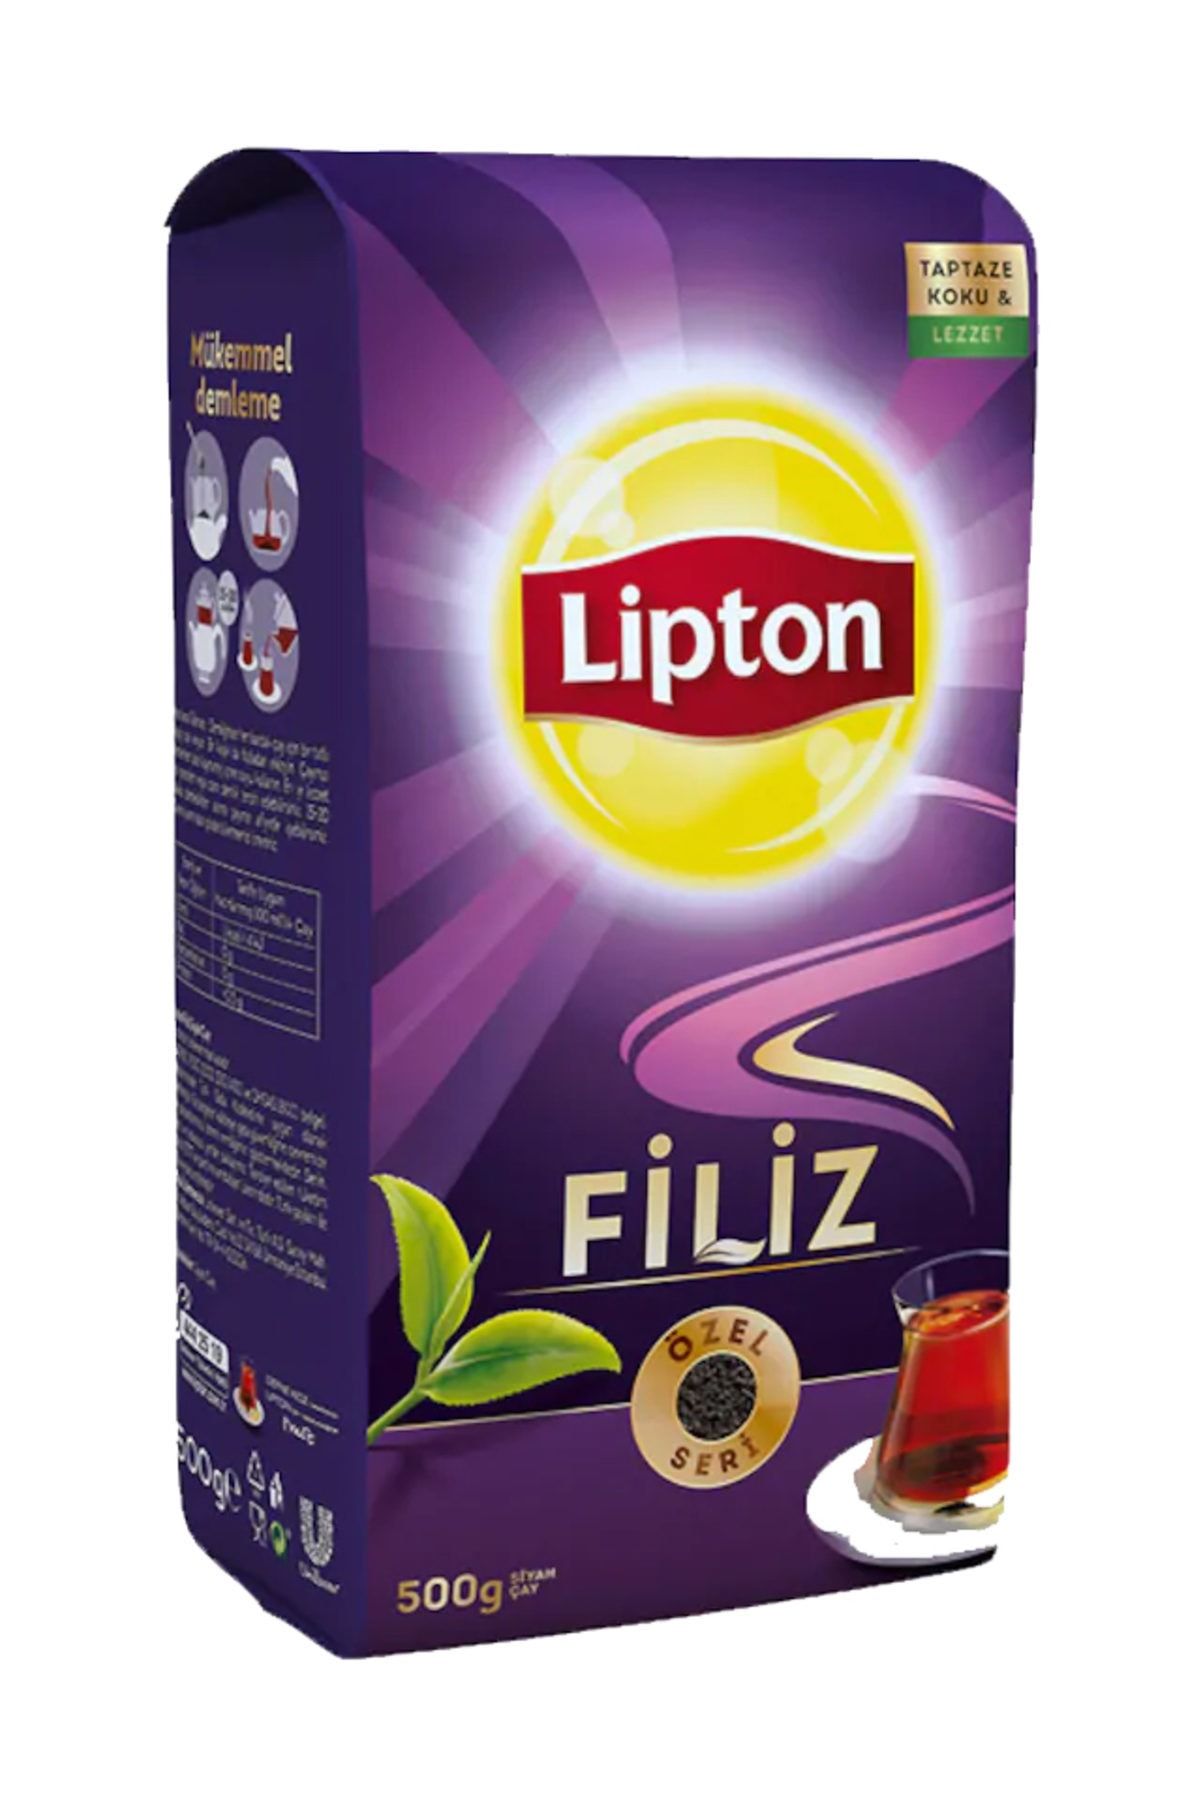 Lipton Filiz Dökme Çay 500 gr